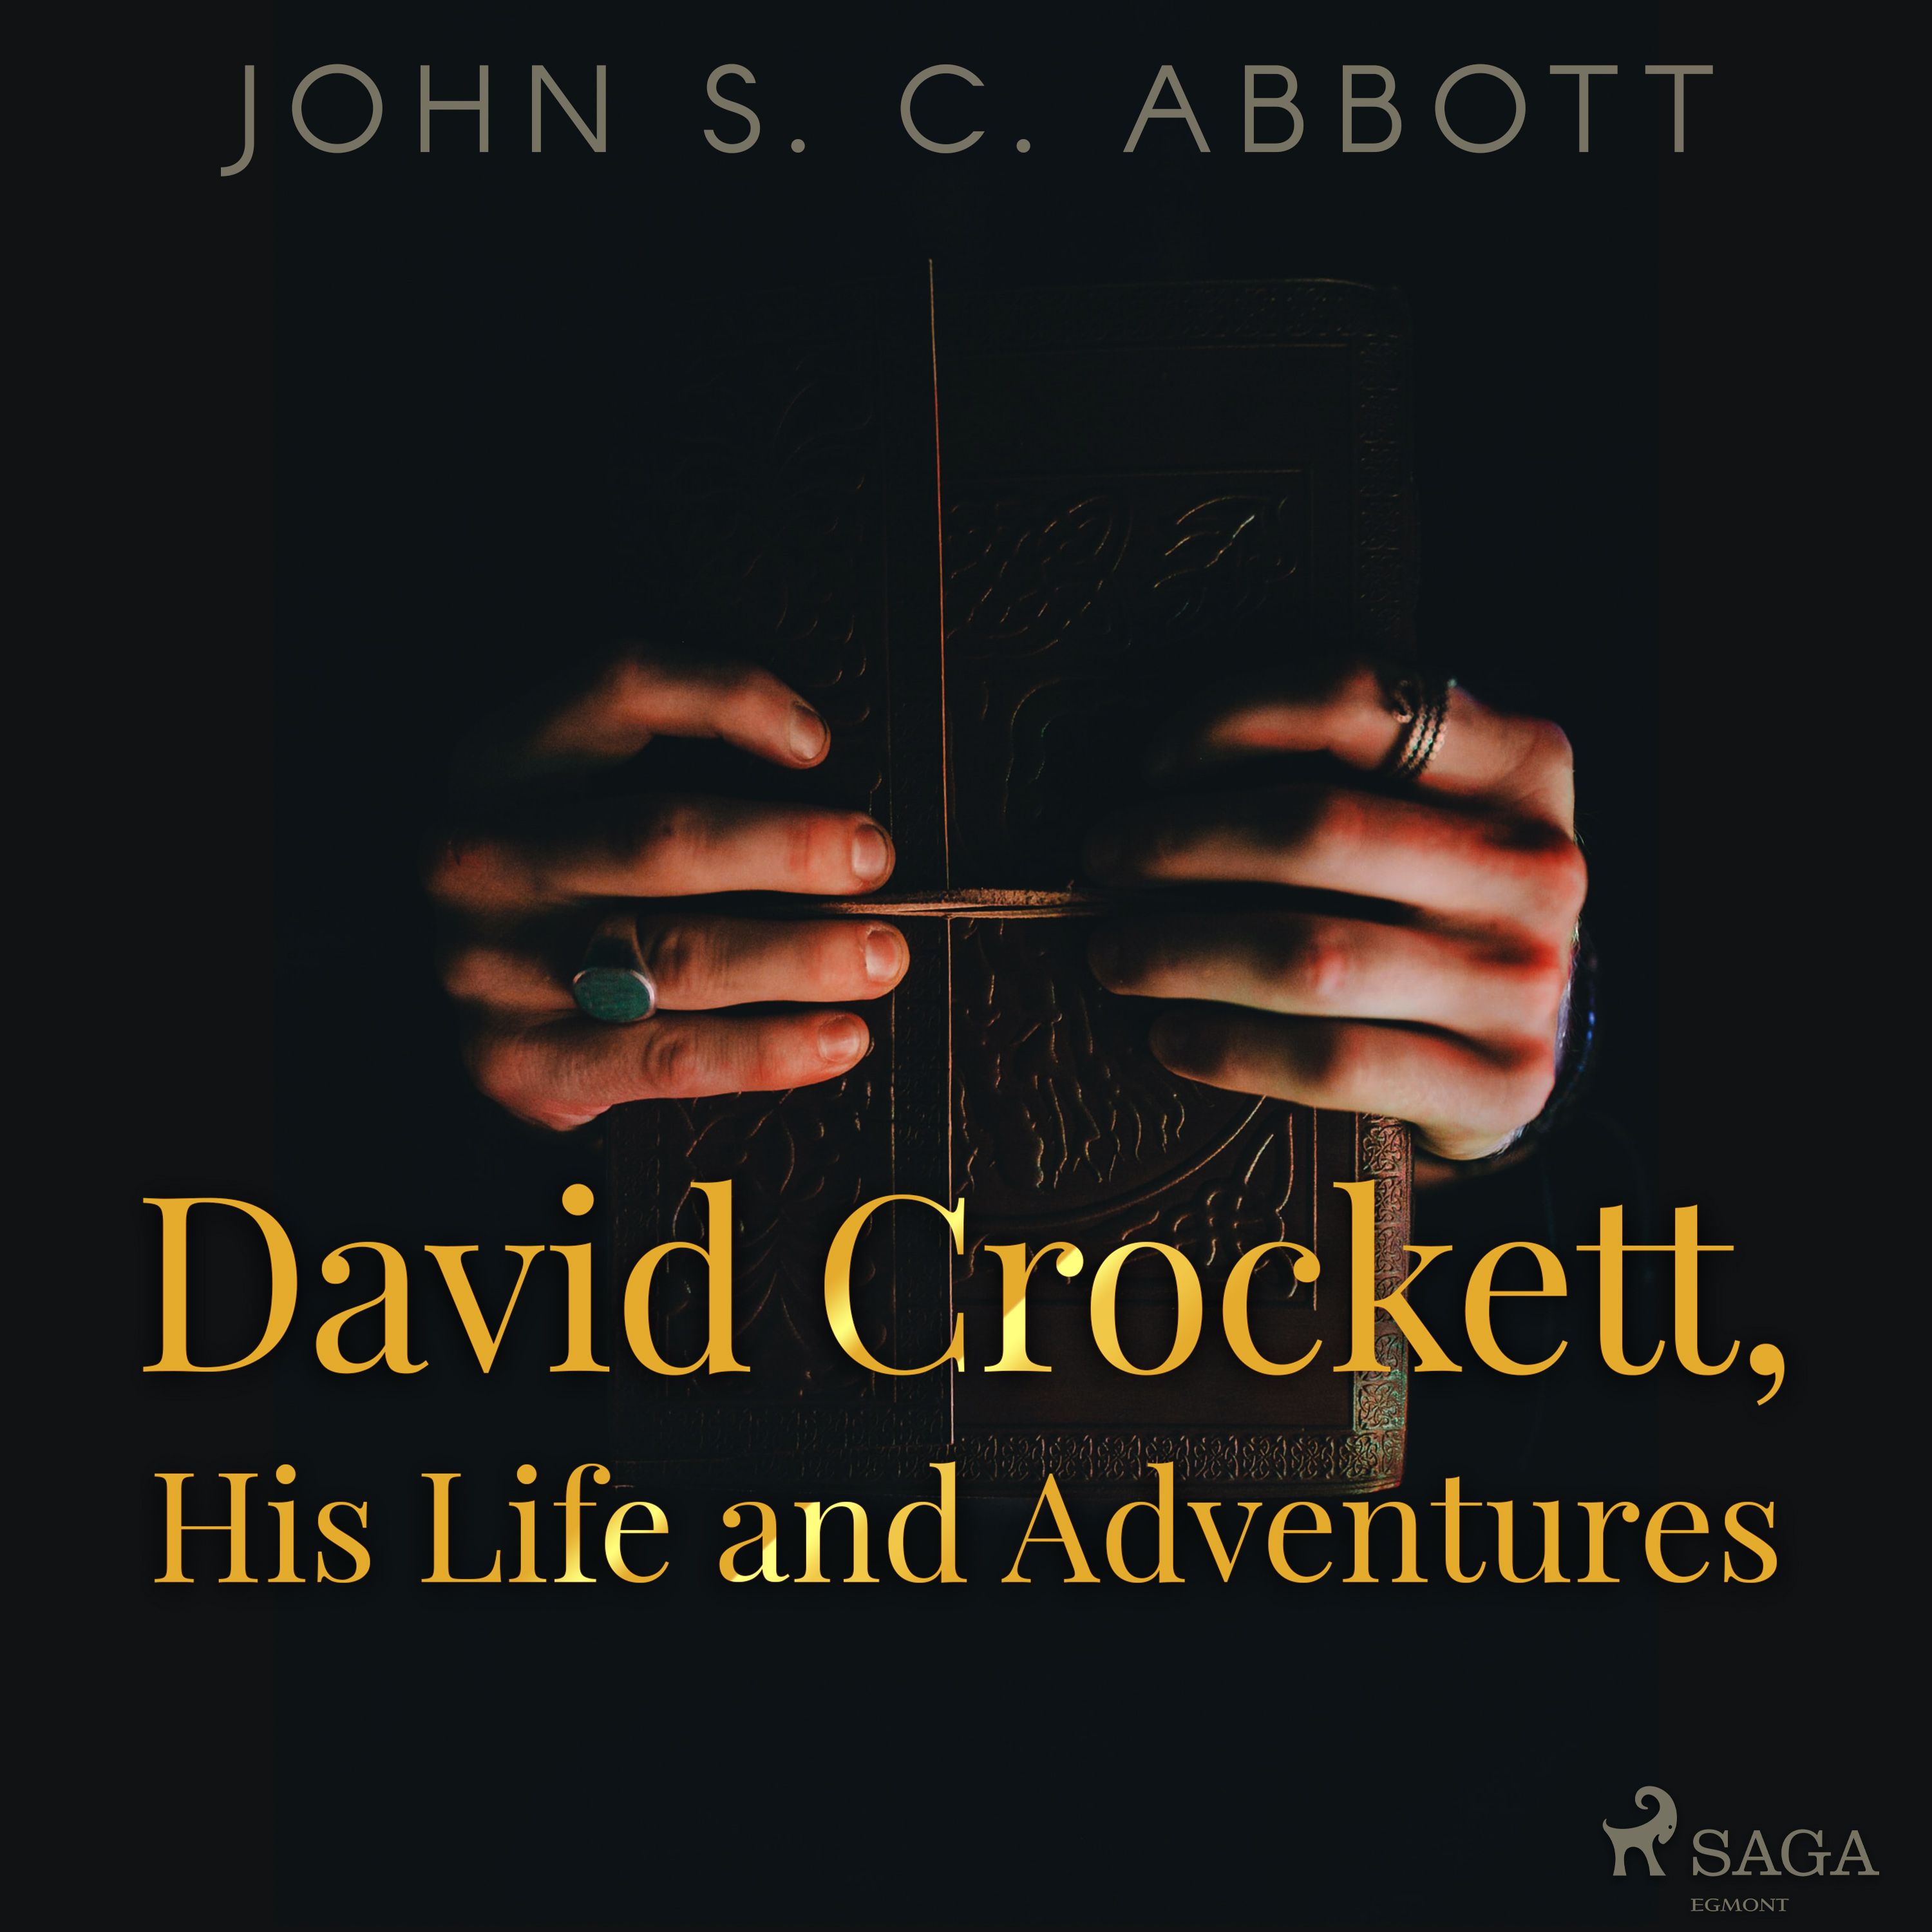 David Crockett, His Life and Adventures, ljudbok av John S. C. Abbott